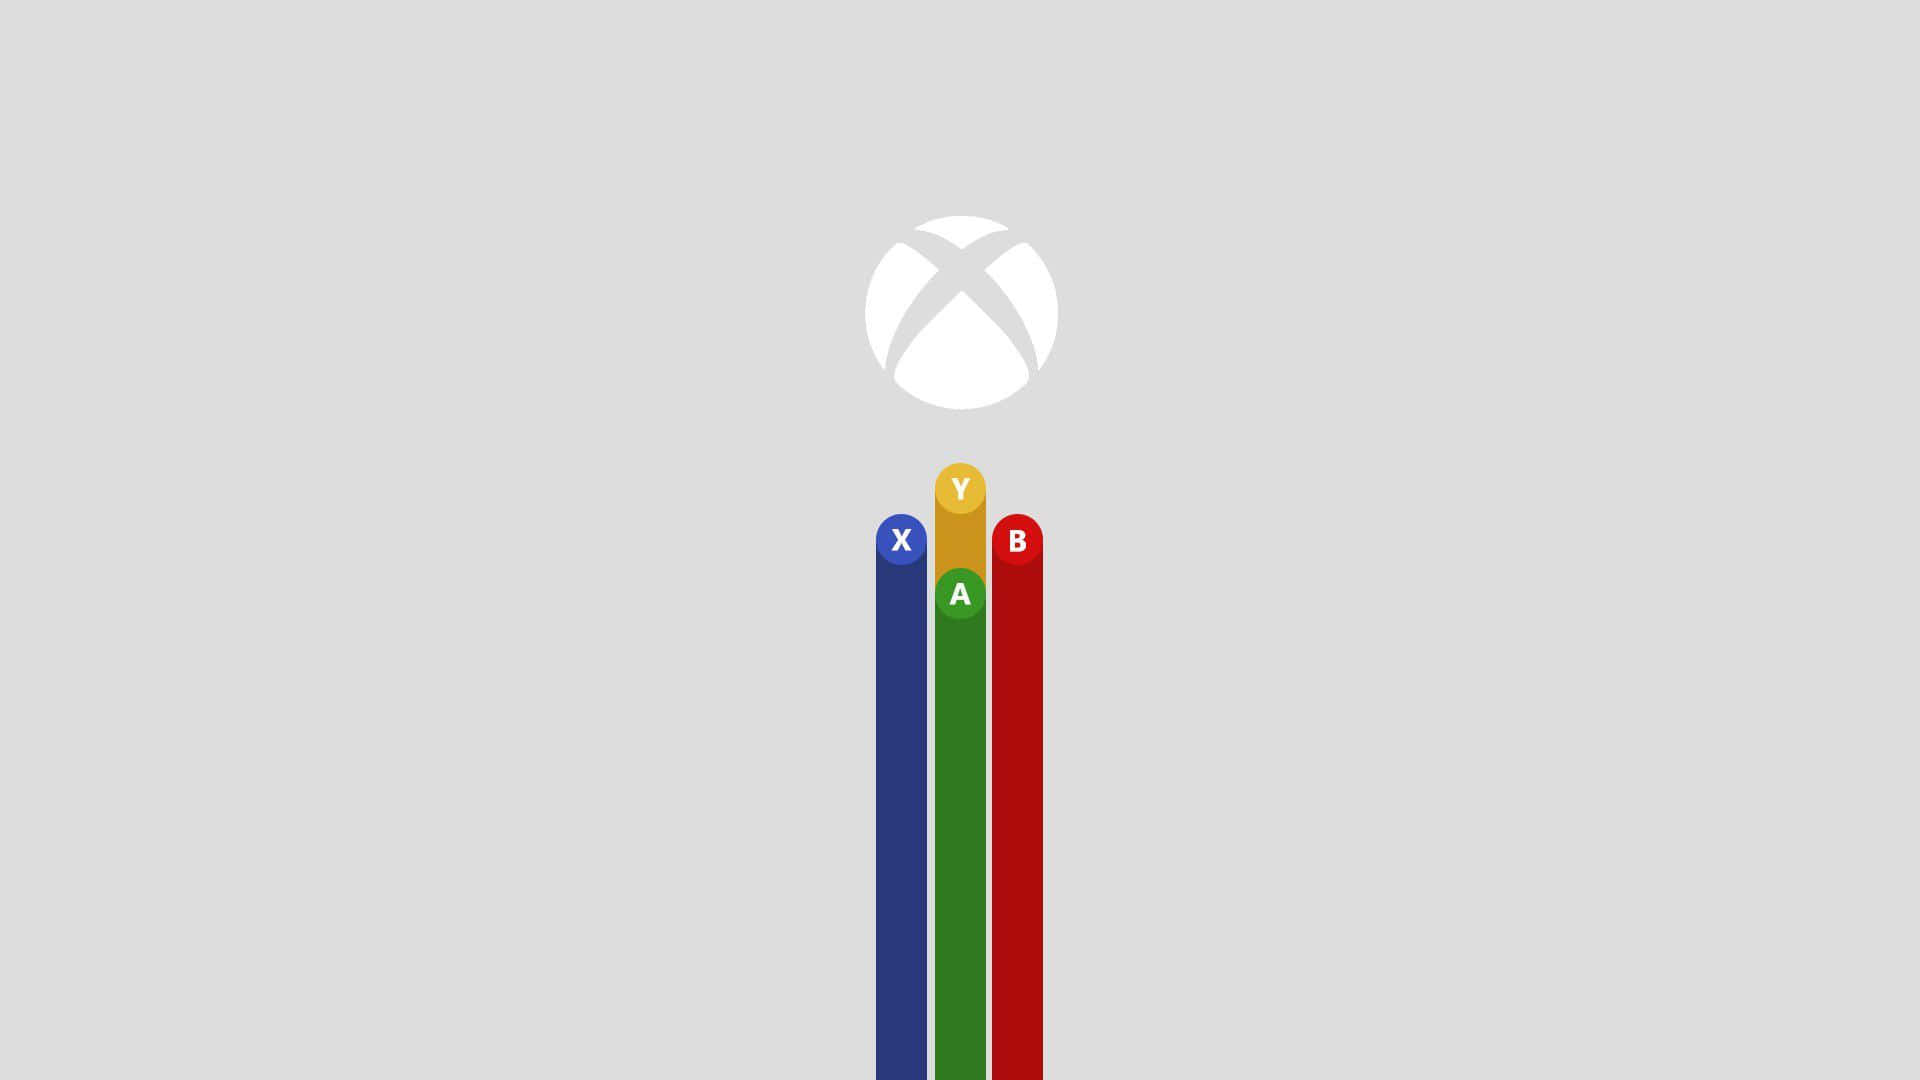 Nyd at spille på den nyeste Xbox-konsol. Wallpaper